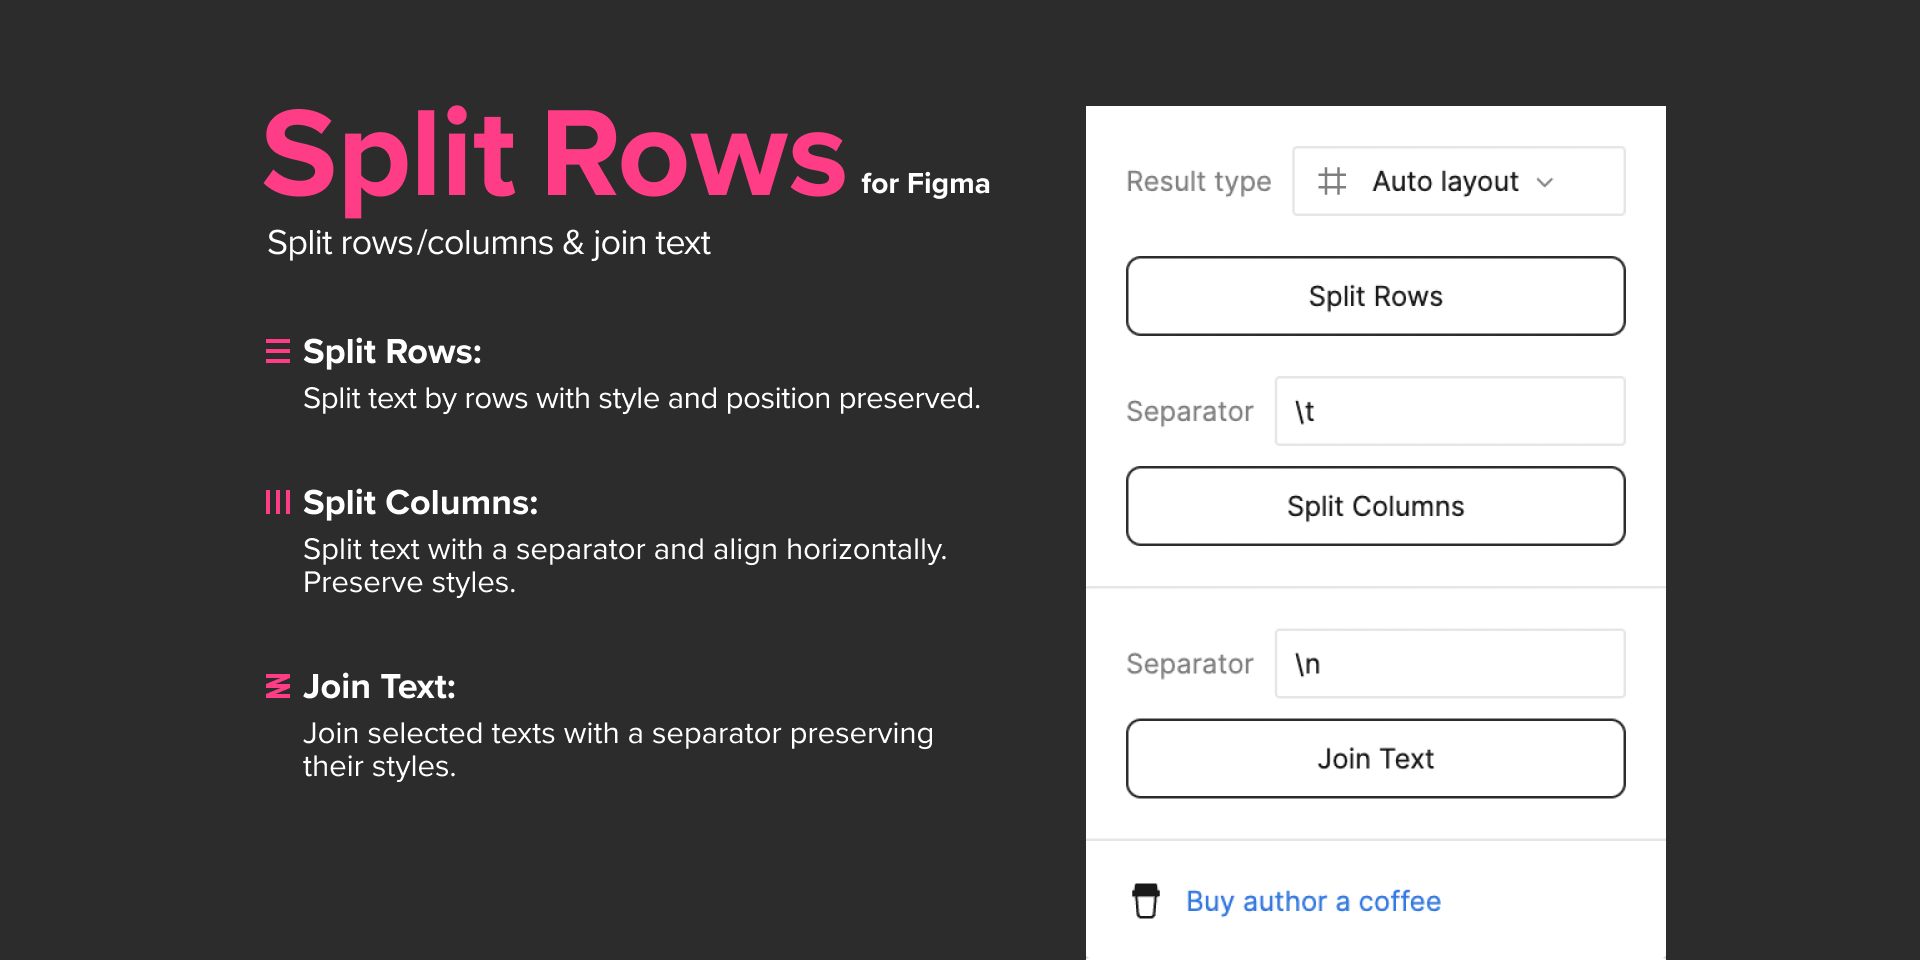 FigmaプラグインSplit Rows for Figma パネルイメージ図版